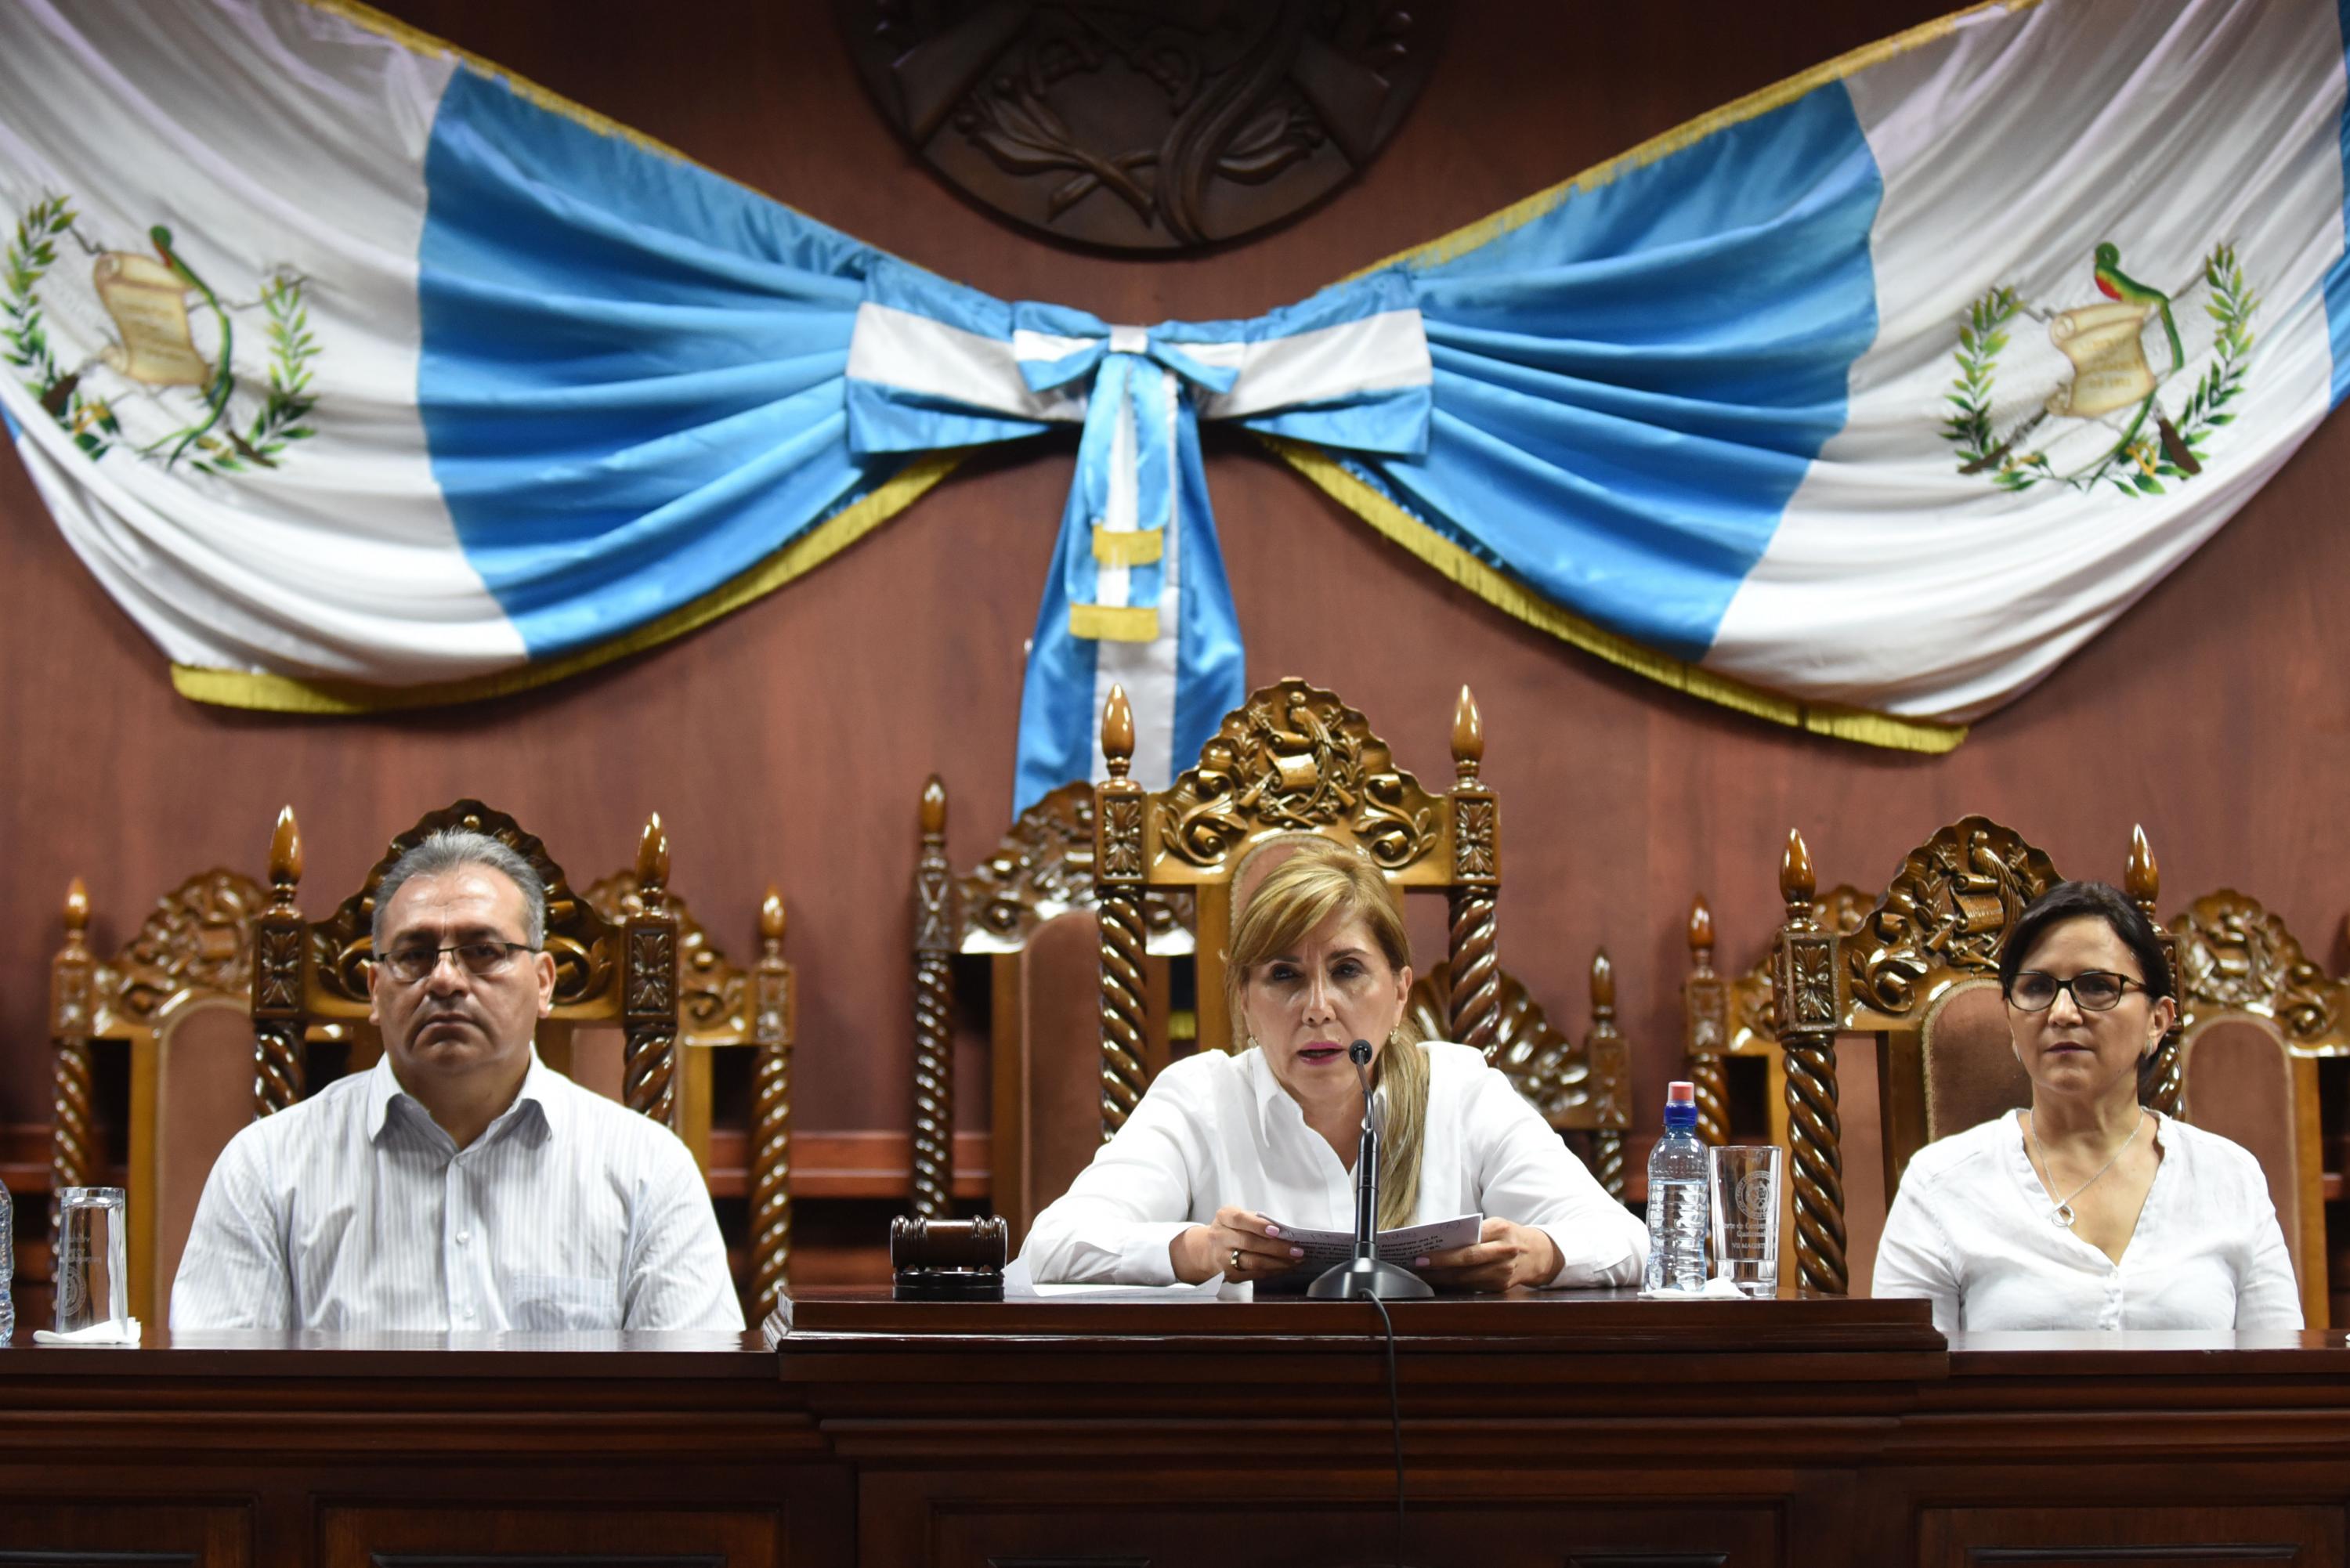 La presidenta de la Corte de Constitucionalidad de Guatemala, Dina Ochoa, en la rueda de prensa del domingo 16 de septiembre de 2018 donde se anunció la nueva decisión del máximo tribunal. Ochoa estuvo acompañada de los magistrados Boanerge Mejia y Goloria Porras.